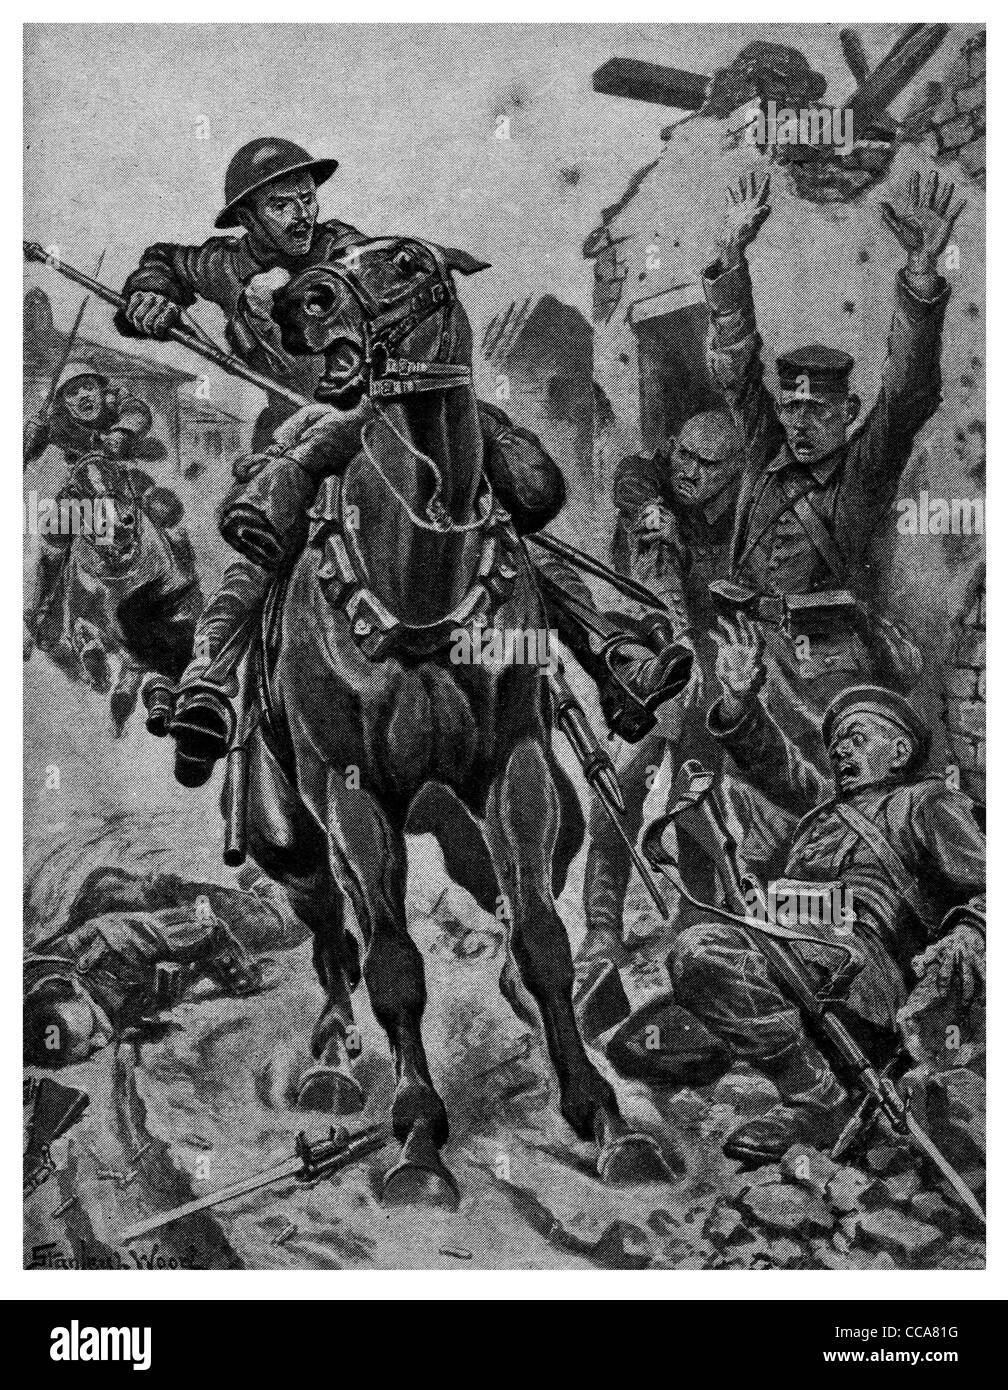 1917 britische Kavallerie laden auf Deutsch Hun Ladung saber Lanze Bajonett Gewehr Offizier Schutt Terror Schock Sattel reiten Stockfoto